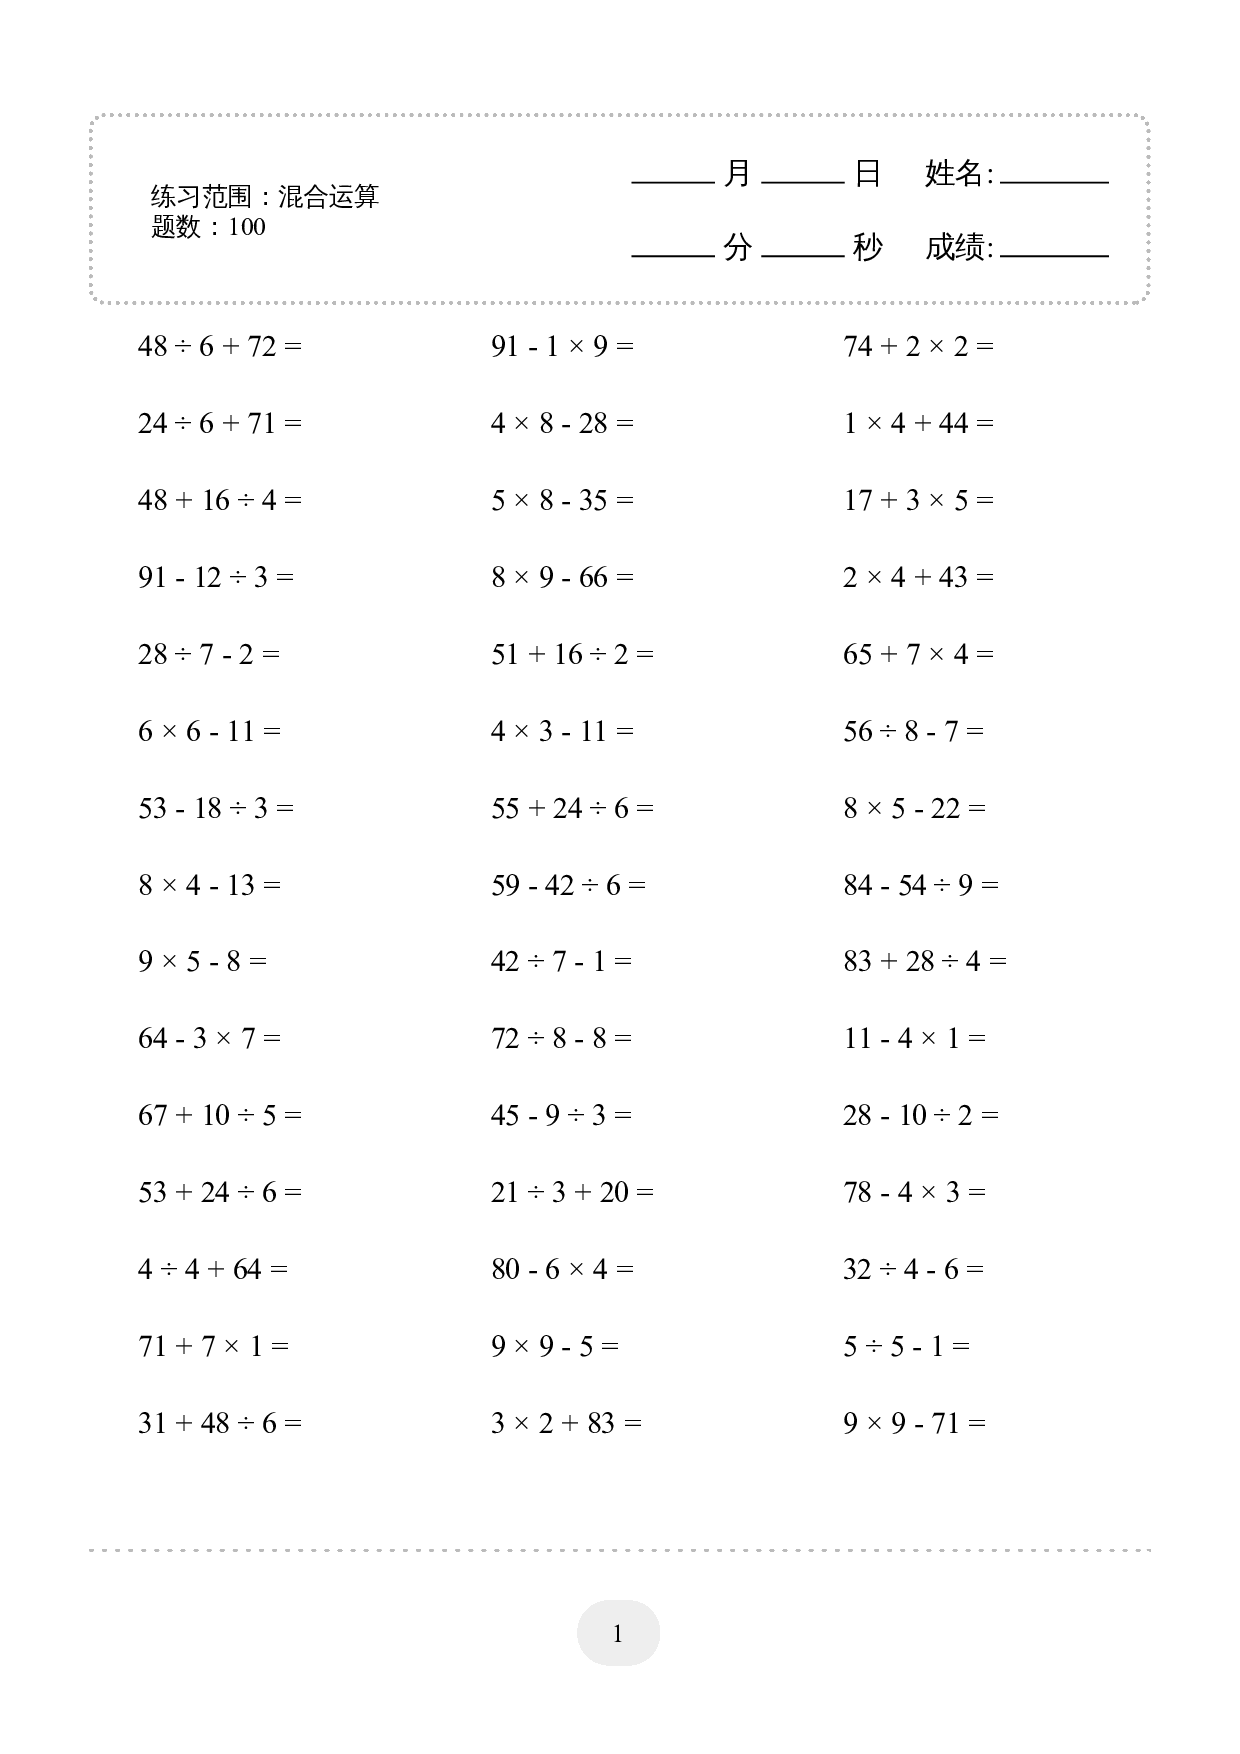 2年级下册数学口算题 (混合运算) 1000题